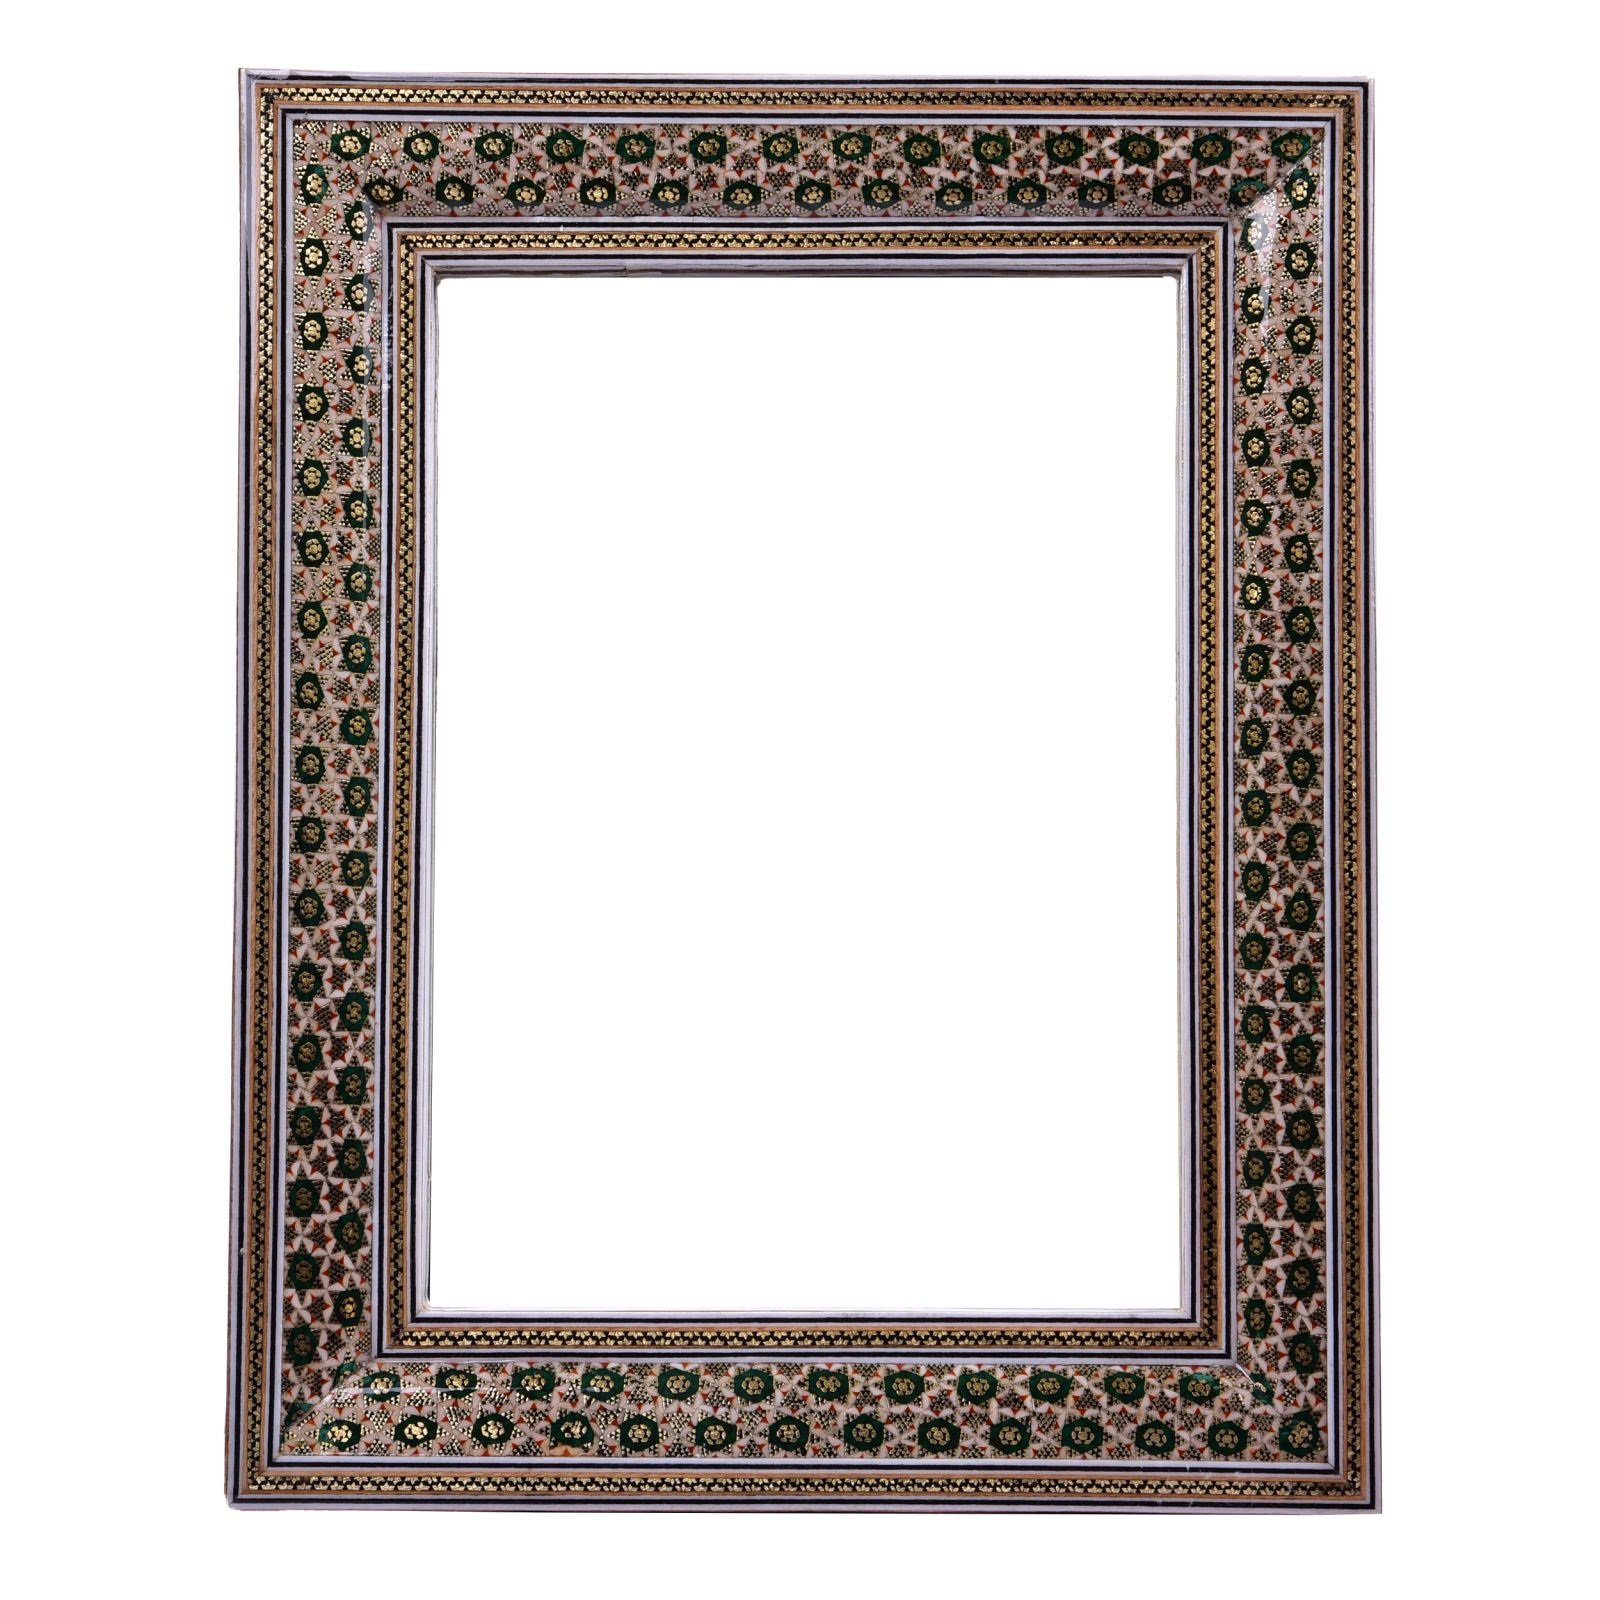 Khatam frame mirror zomorod design code TKH1824 , Khatam Frame, Inlaid, Khatam Mirror Frame, Khatam